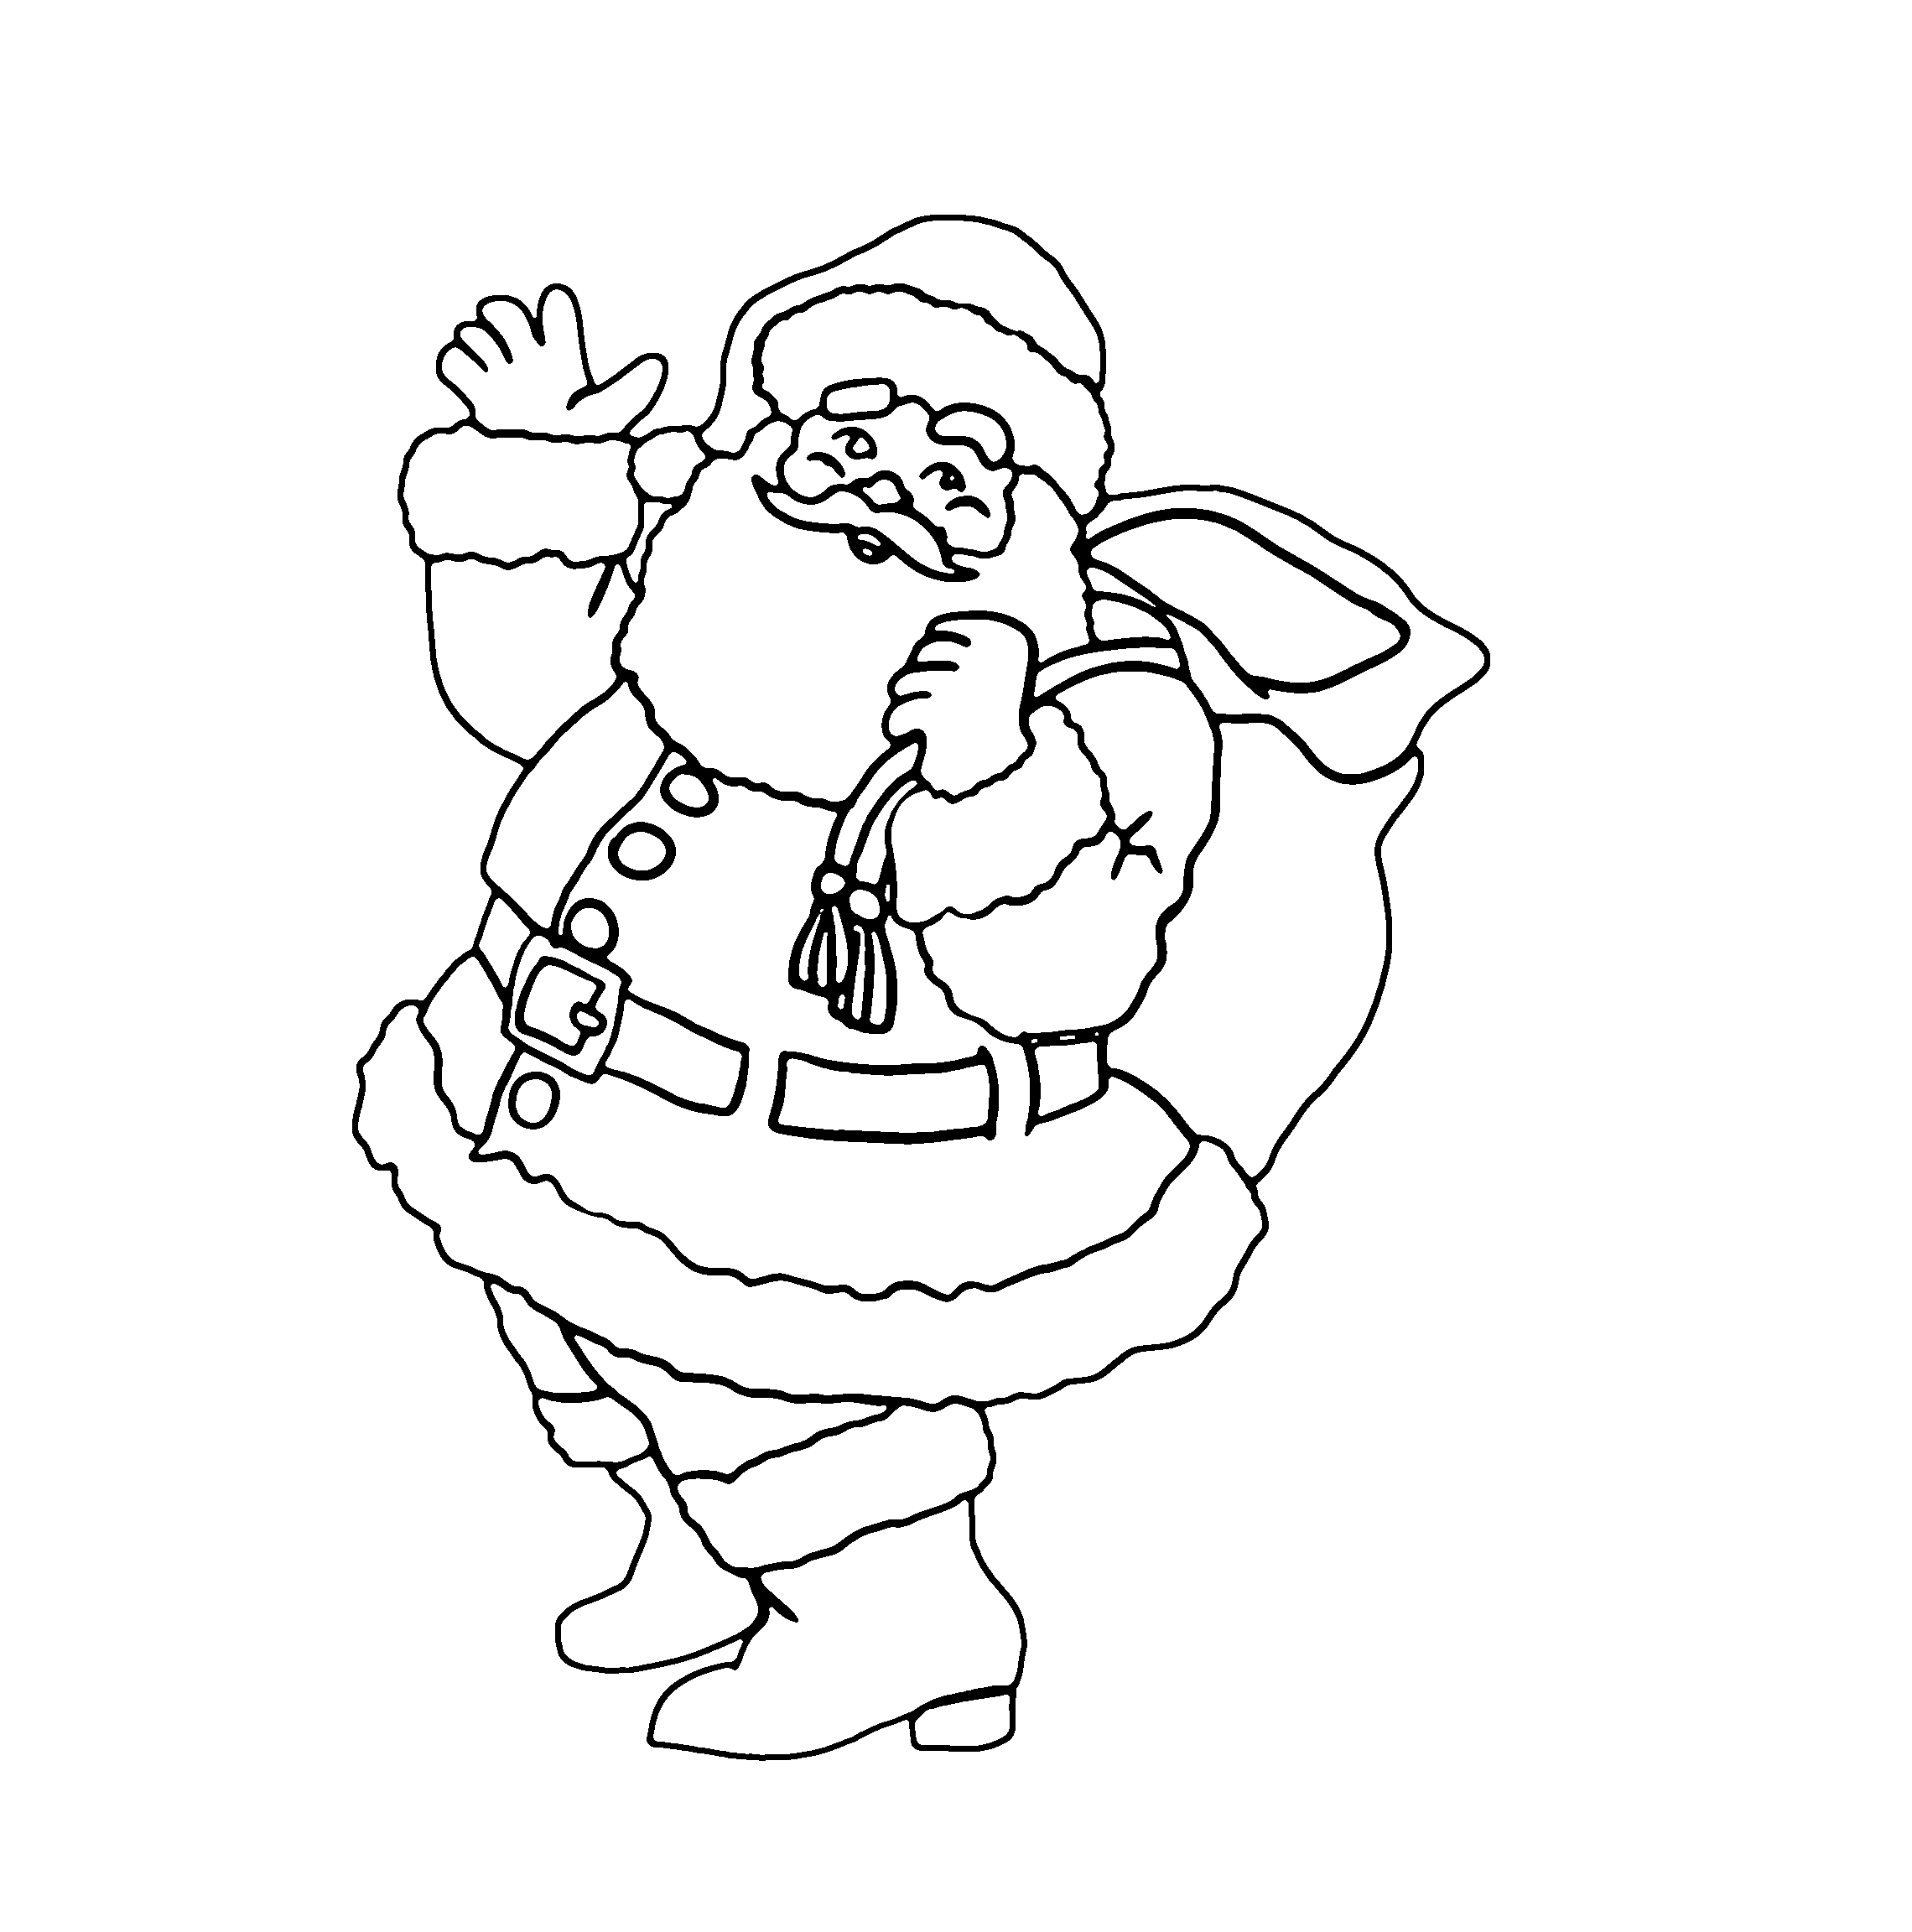 Weihnachtsmann Ausmalbilder (Santa Claus) Bilder mit Weihnachtsbilder Drucken